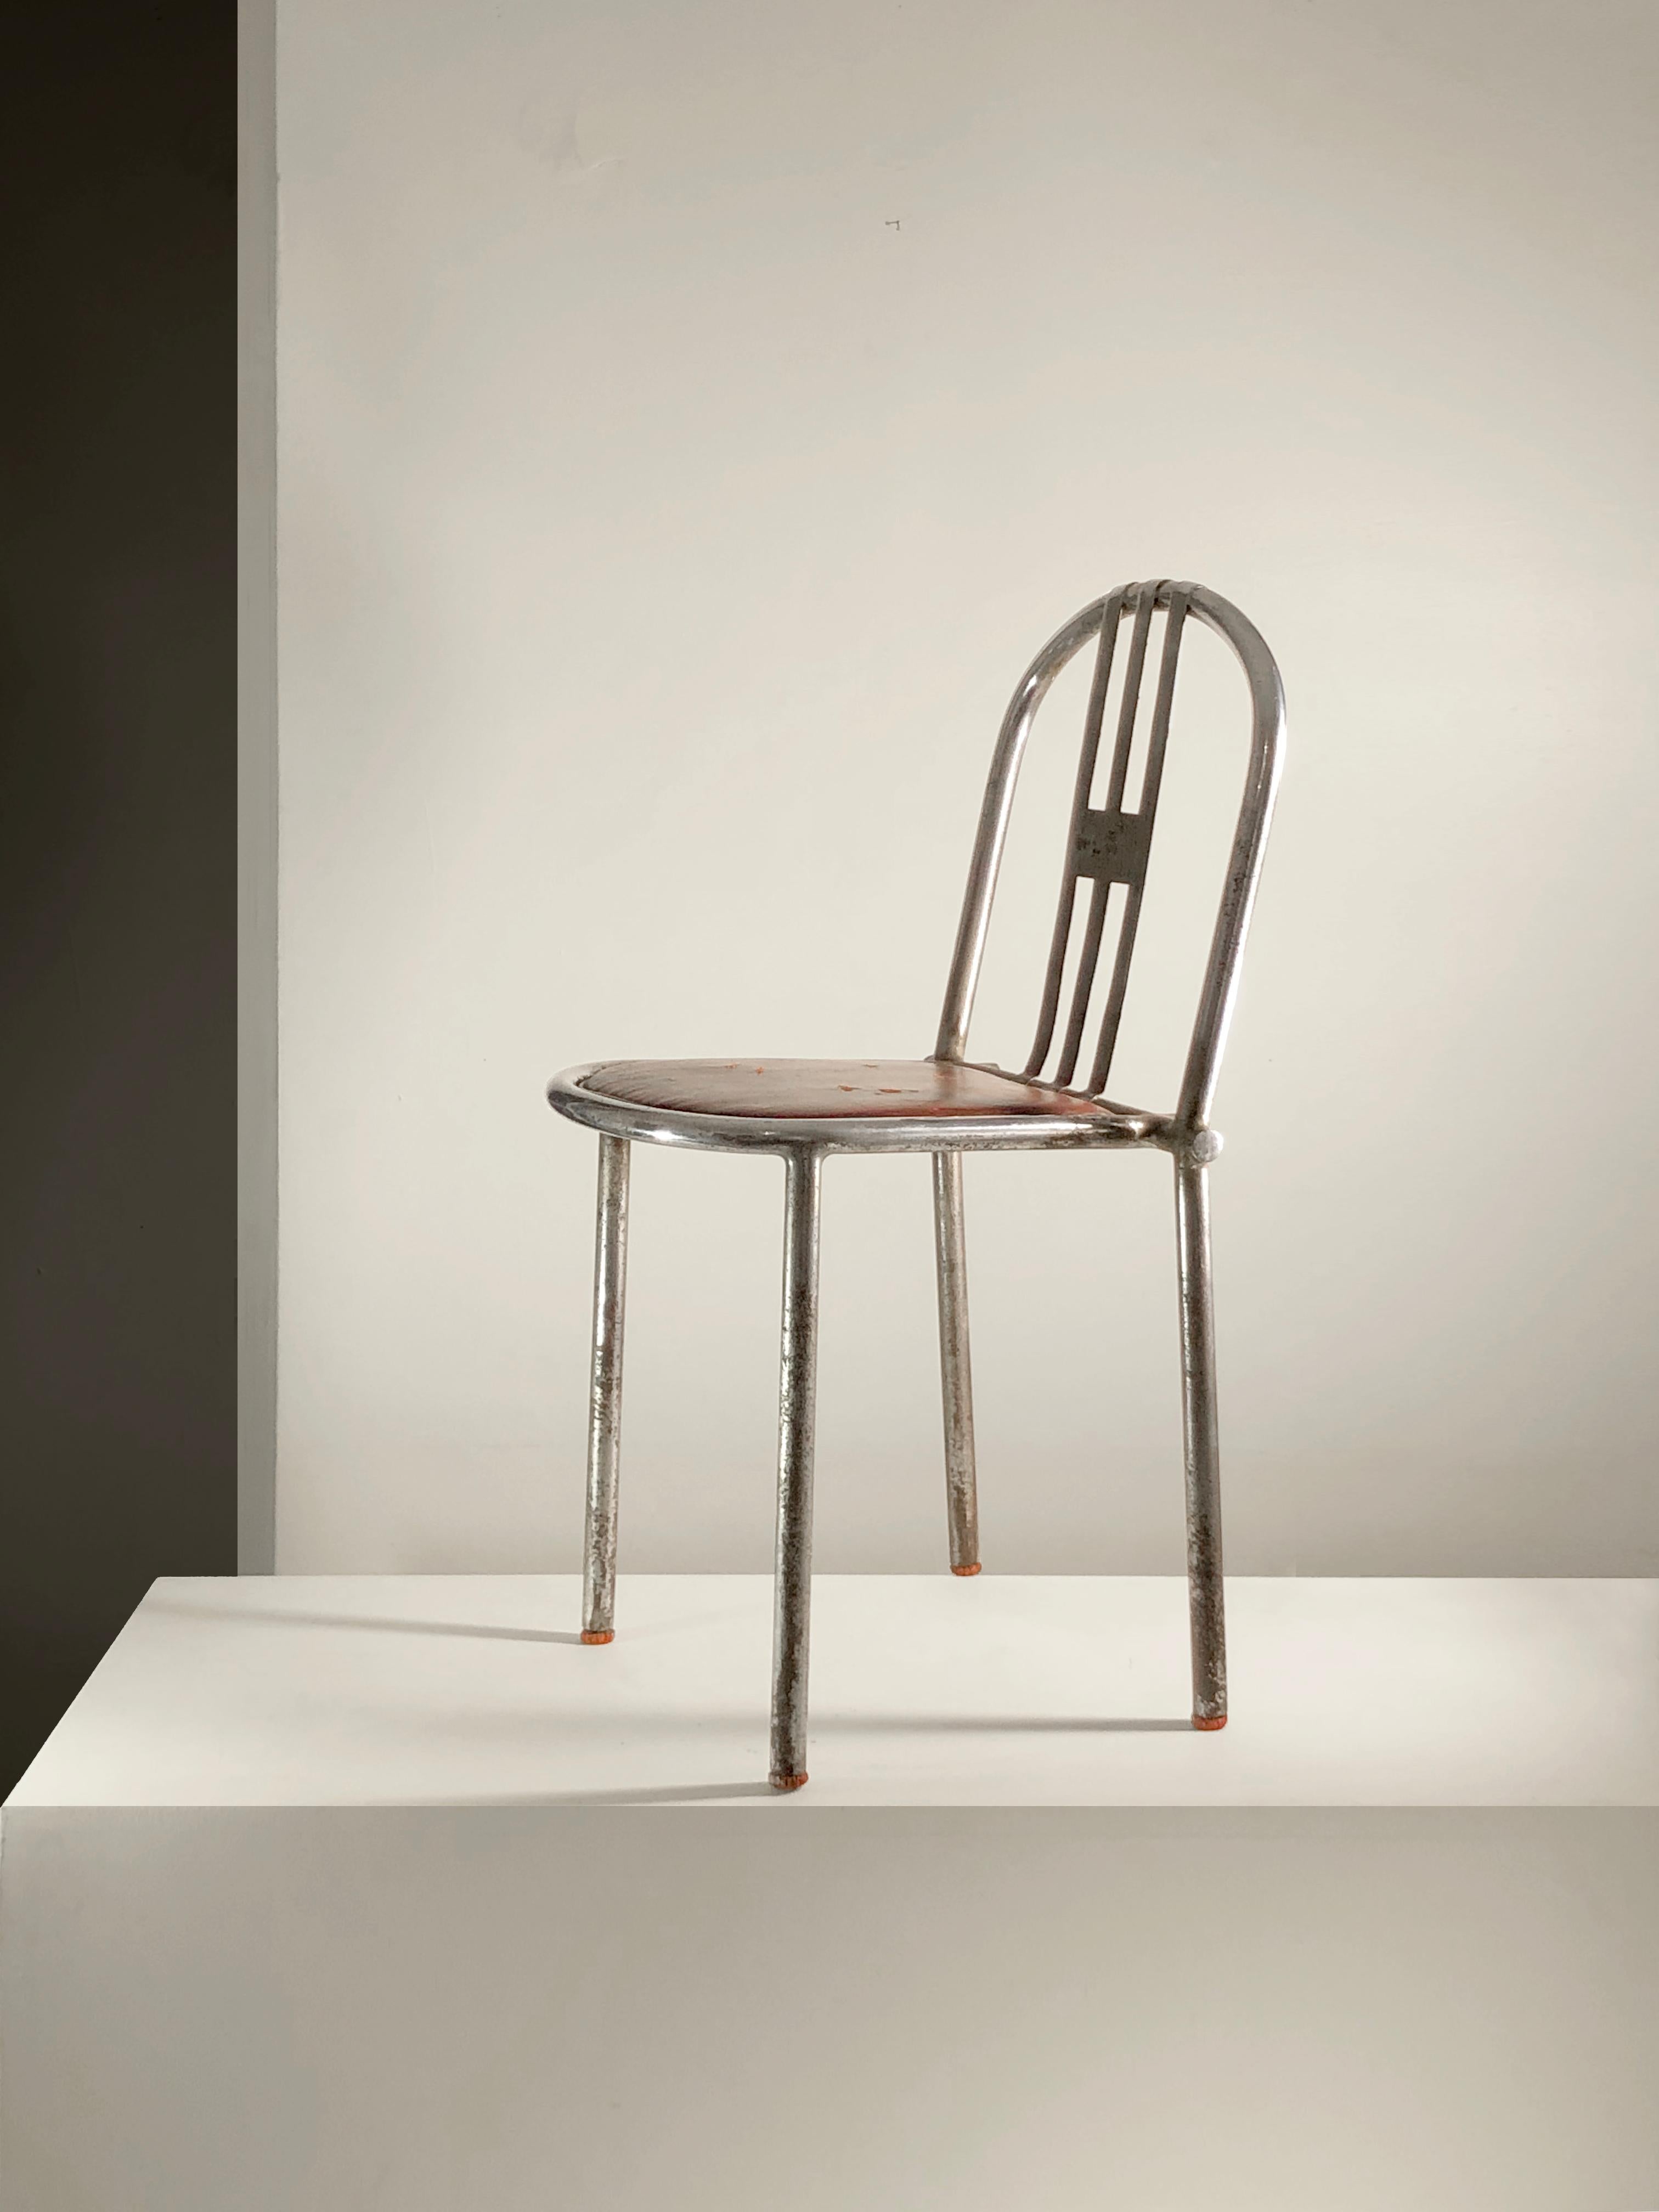 Nous présentons 2 pièces rares en vente une à une sur 1stDibs :
la version la plus ancienne et la plus rare de l'emblématique chaise Tubor créée par l'architecte français Robert Mallet-Stevens, certainement à la fin des années 1920